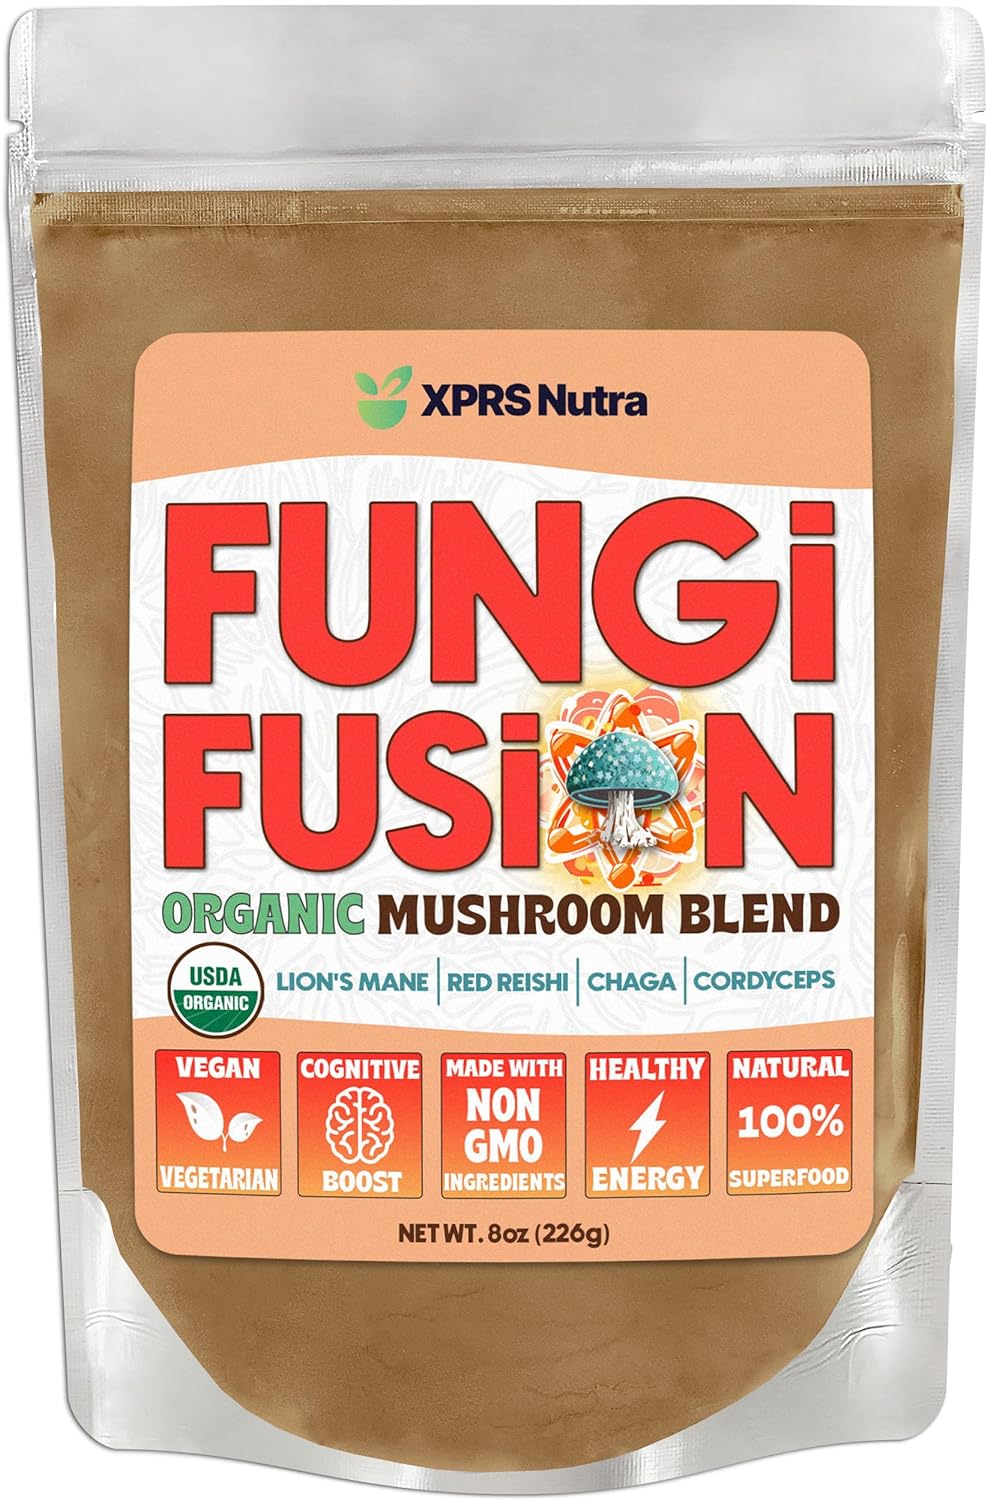 Fungi Fusion Organic Mushroom Powder Blend of Lion's Mane, Reishi, Chaga and Cordyceps